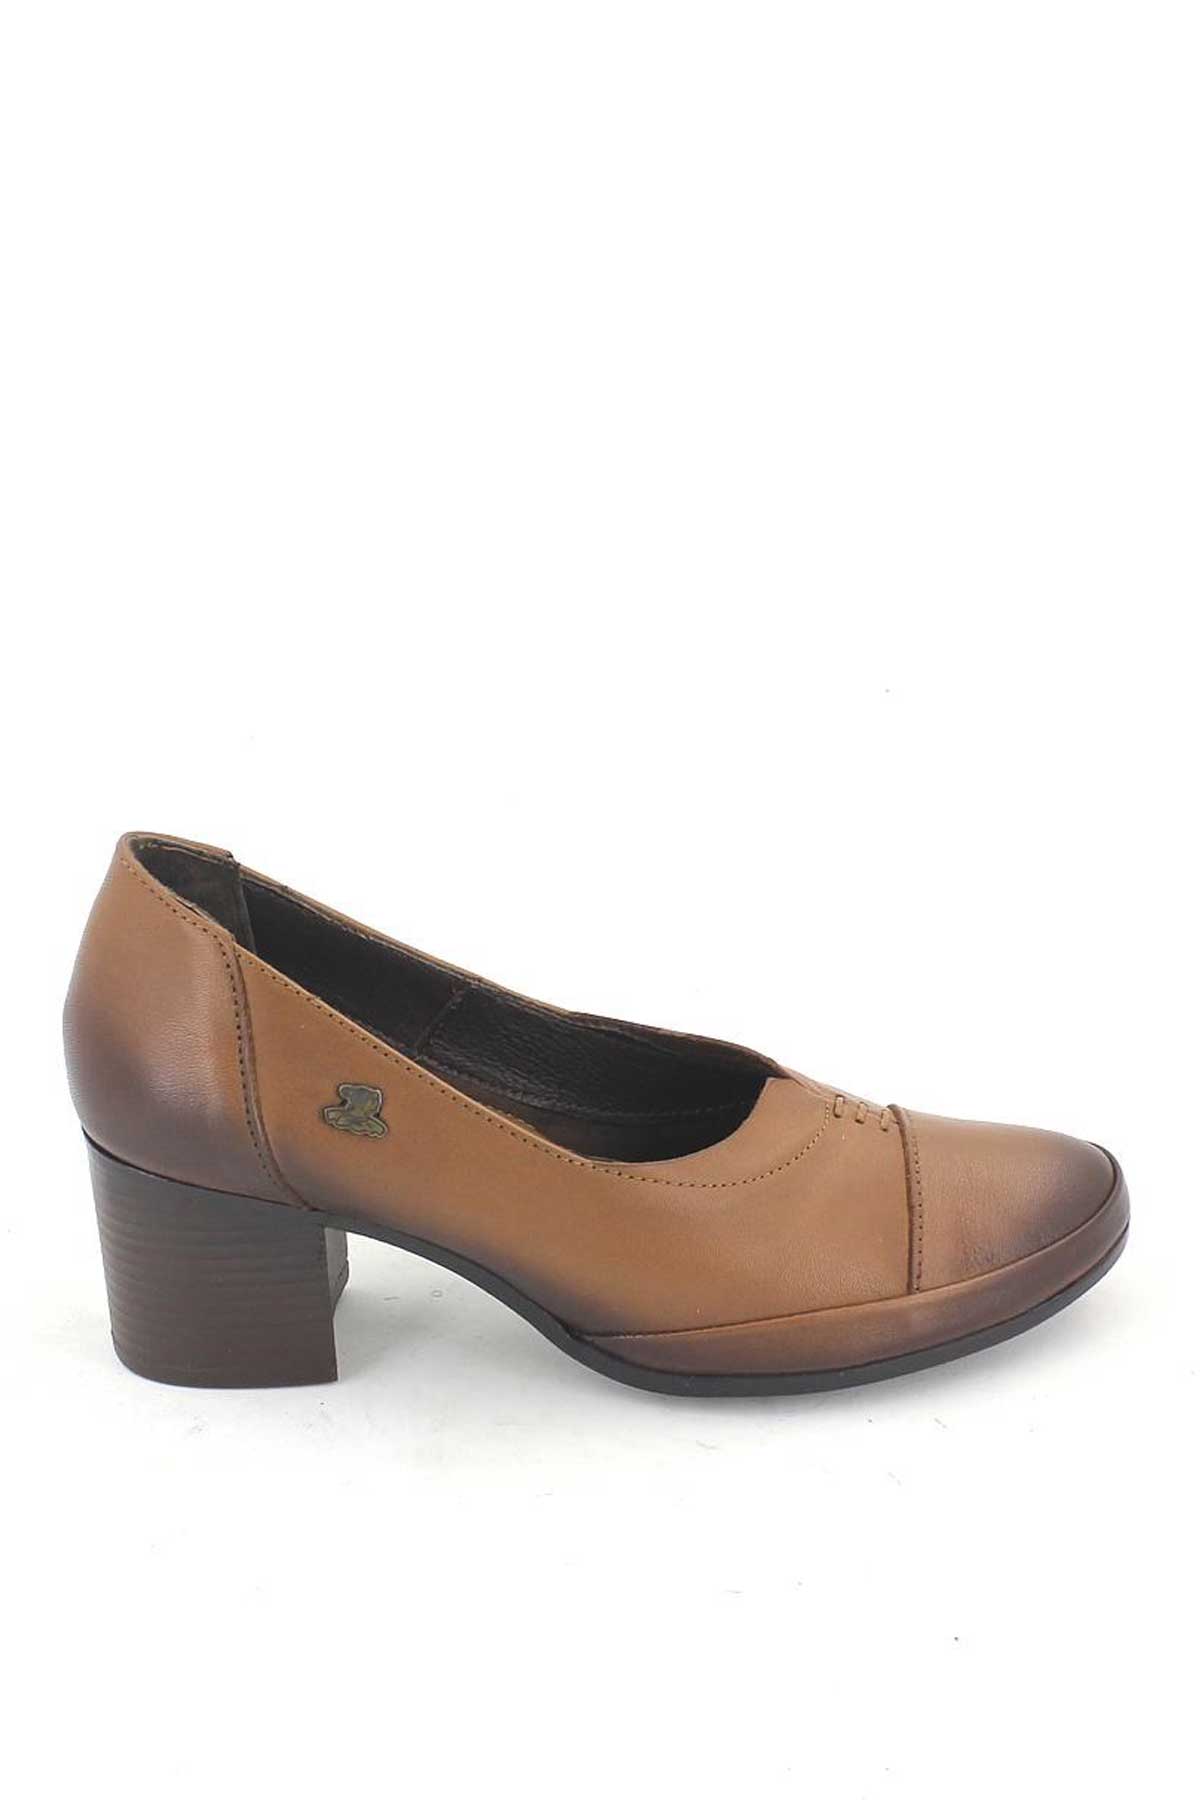 Kadın Topuklu Deri Ayakkabı Taba 1911901K - Thumbnail